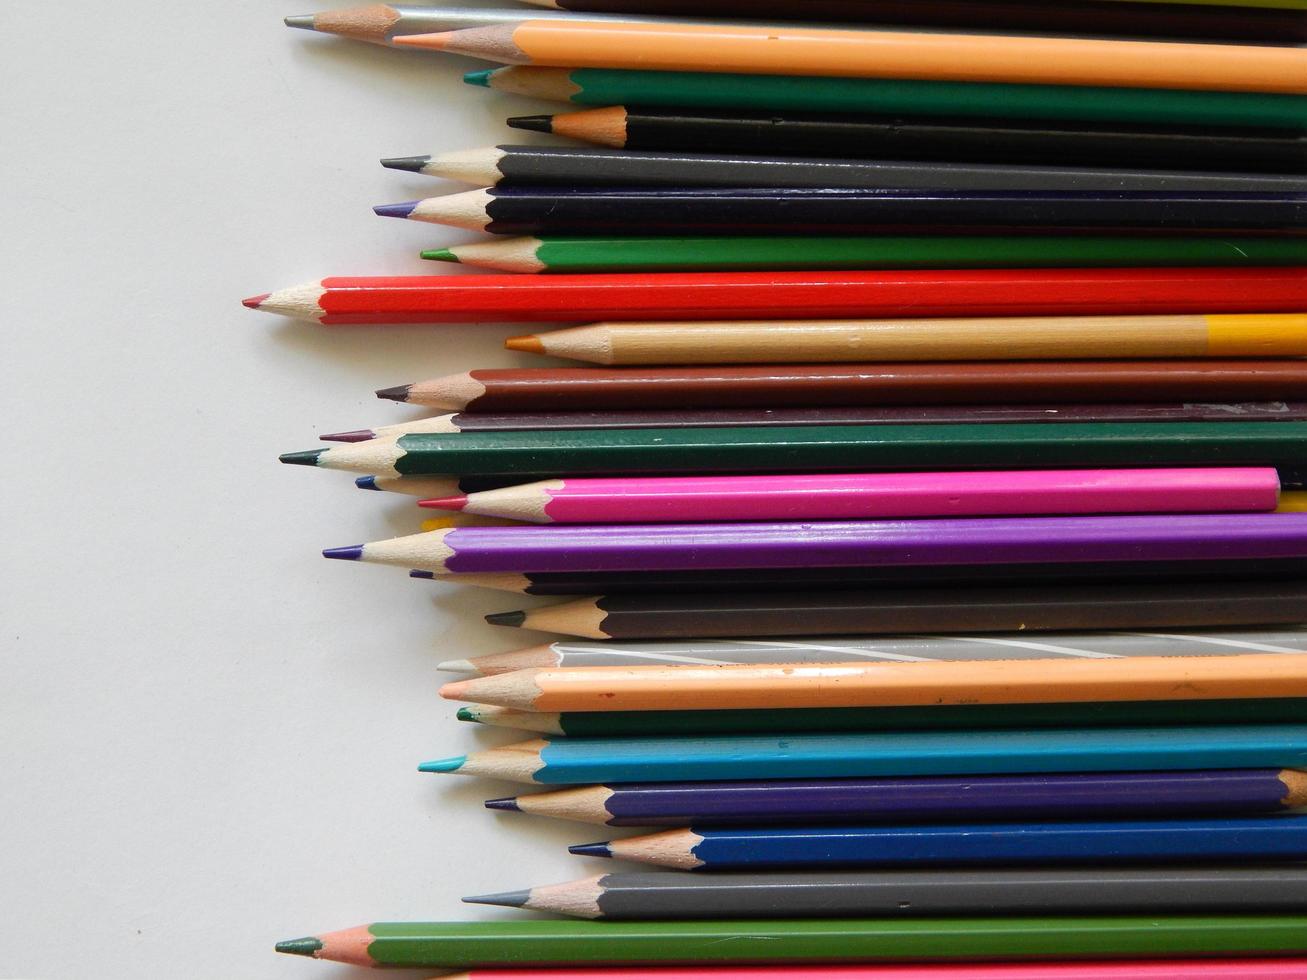 matite colorate su sfondo bianco foto